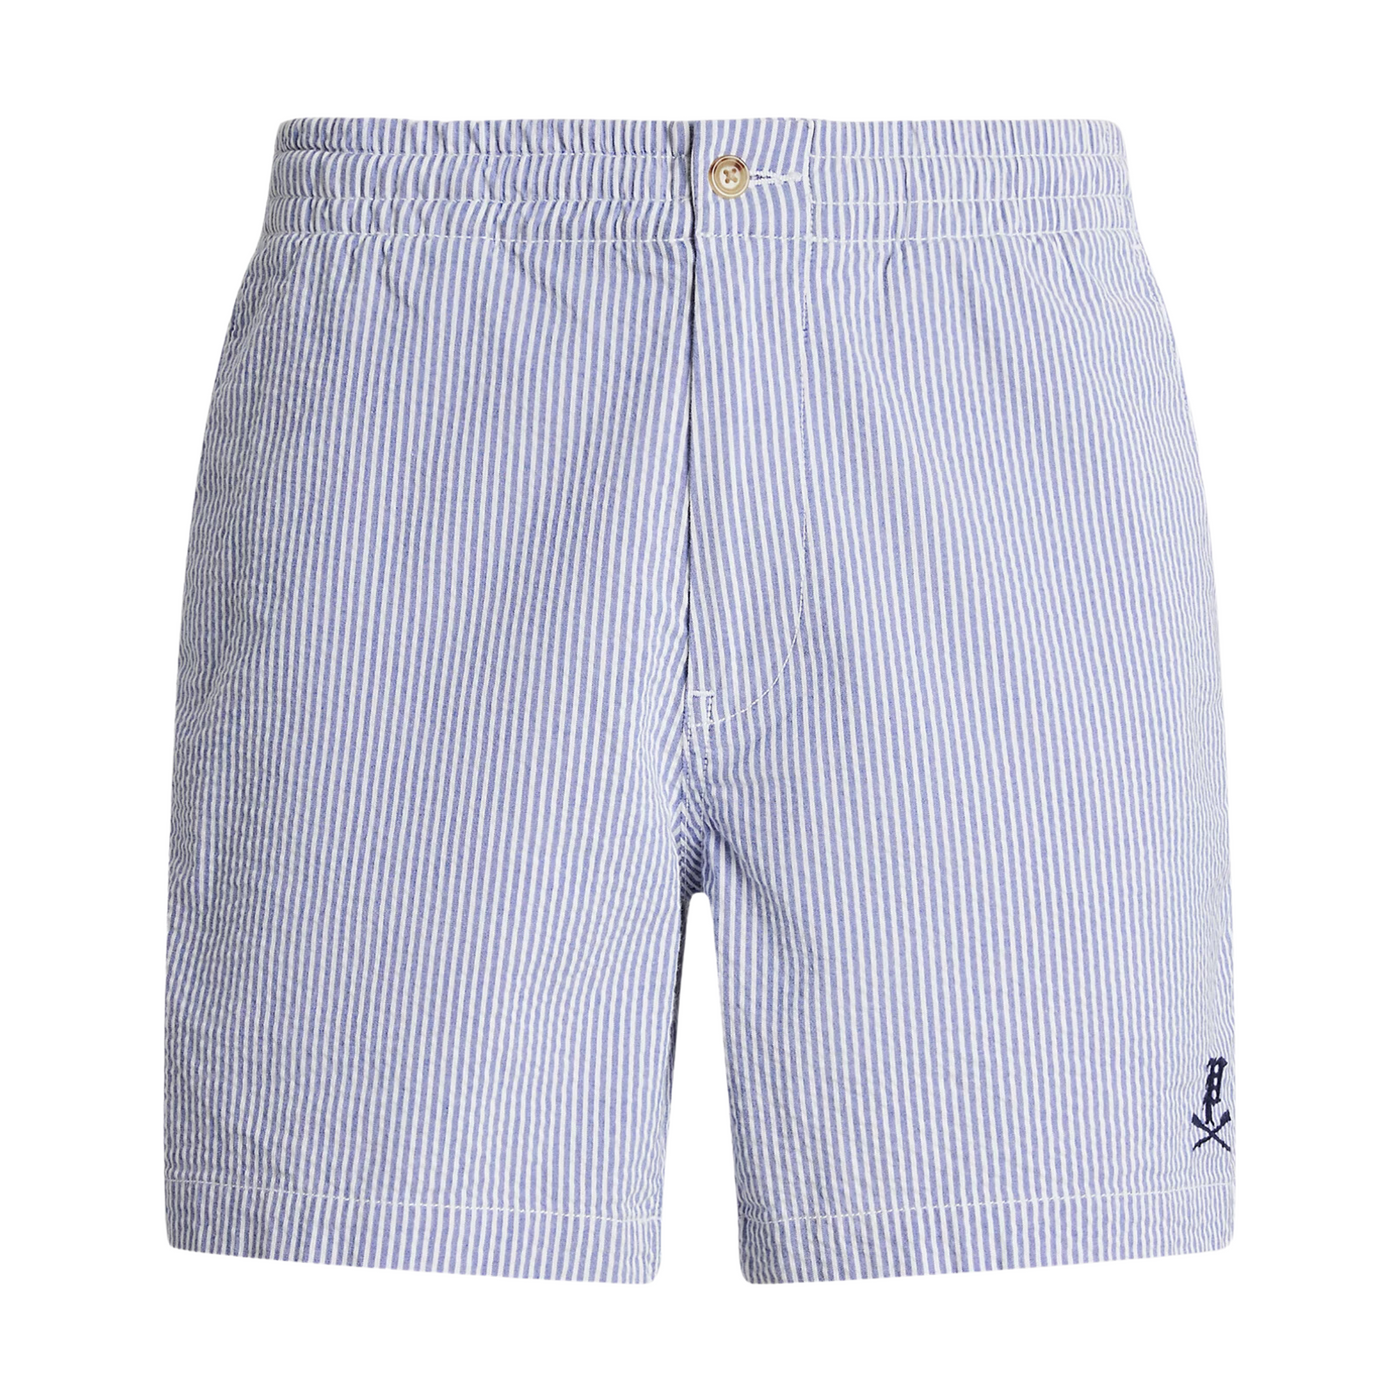 Ralph Lauren Seersucker Blå/Hvid Stribet shorts